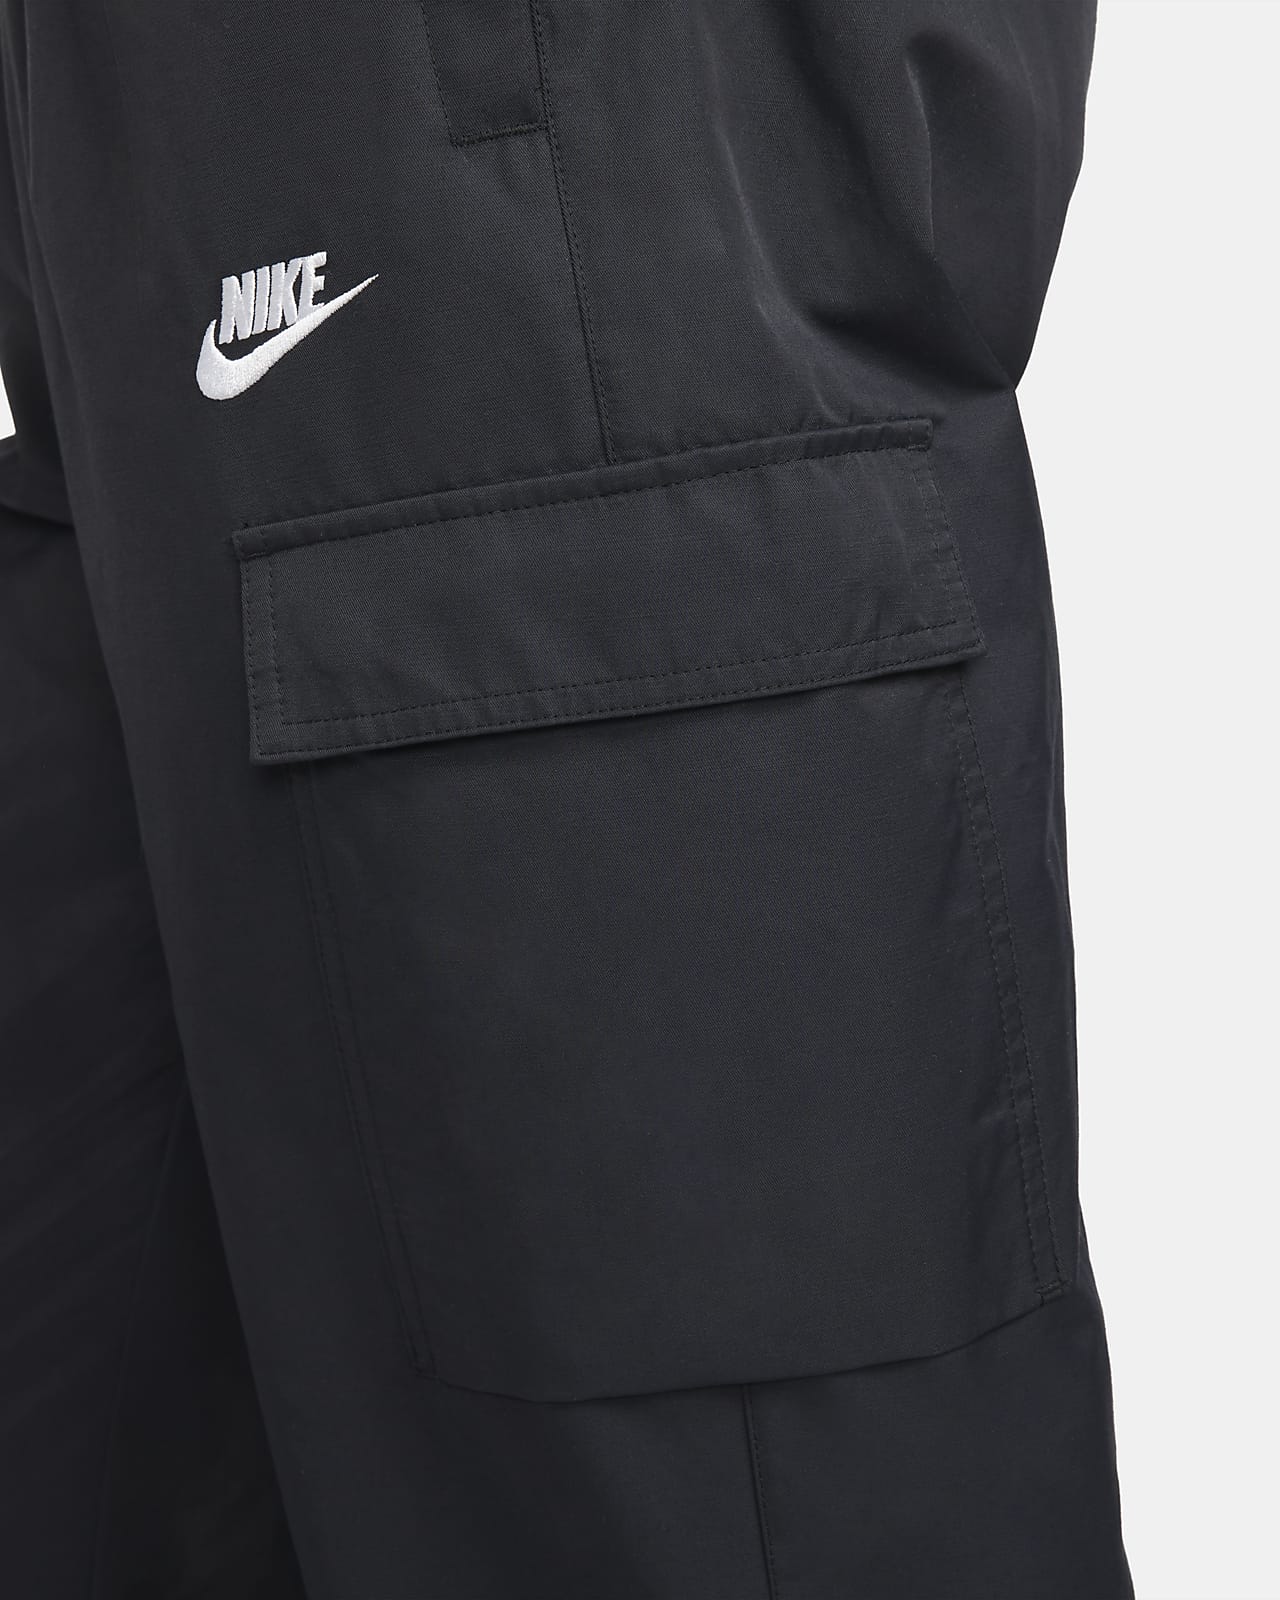 NEW Nike Sportswear Men's Woven Track Pants Jogger Size M L XL 2XL